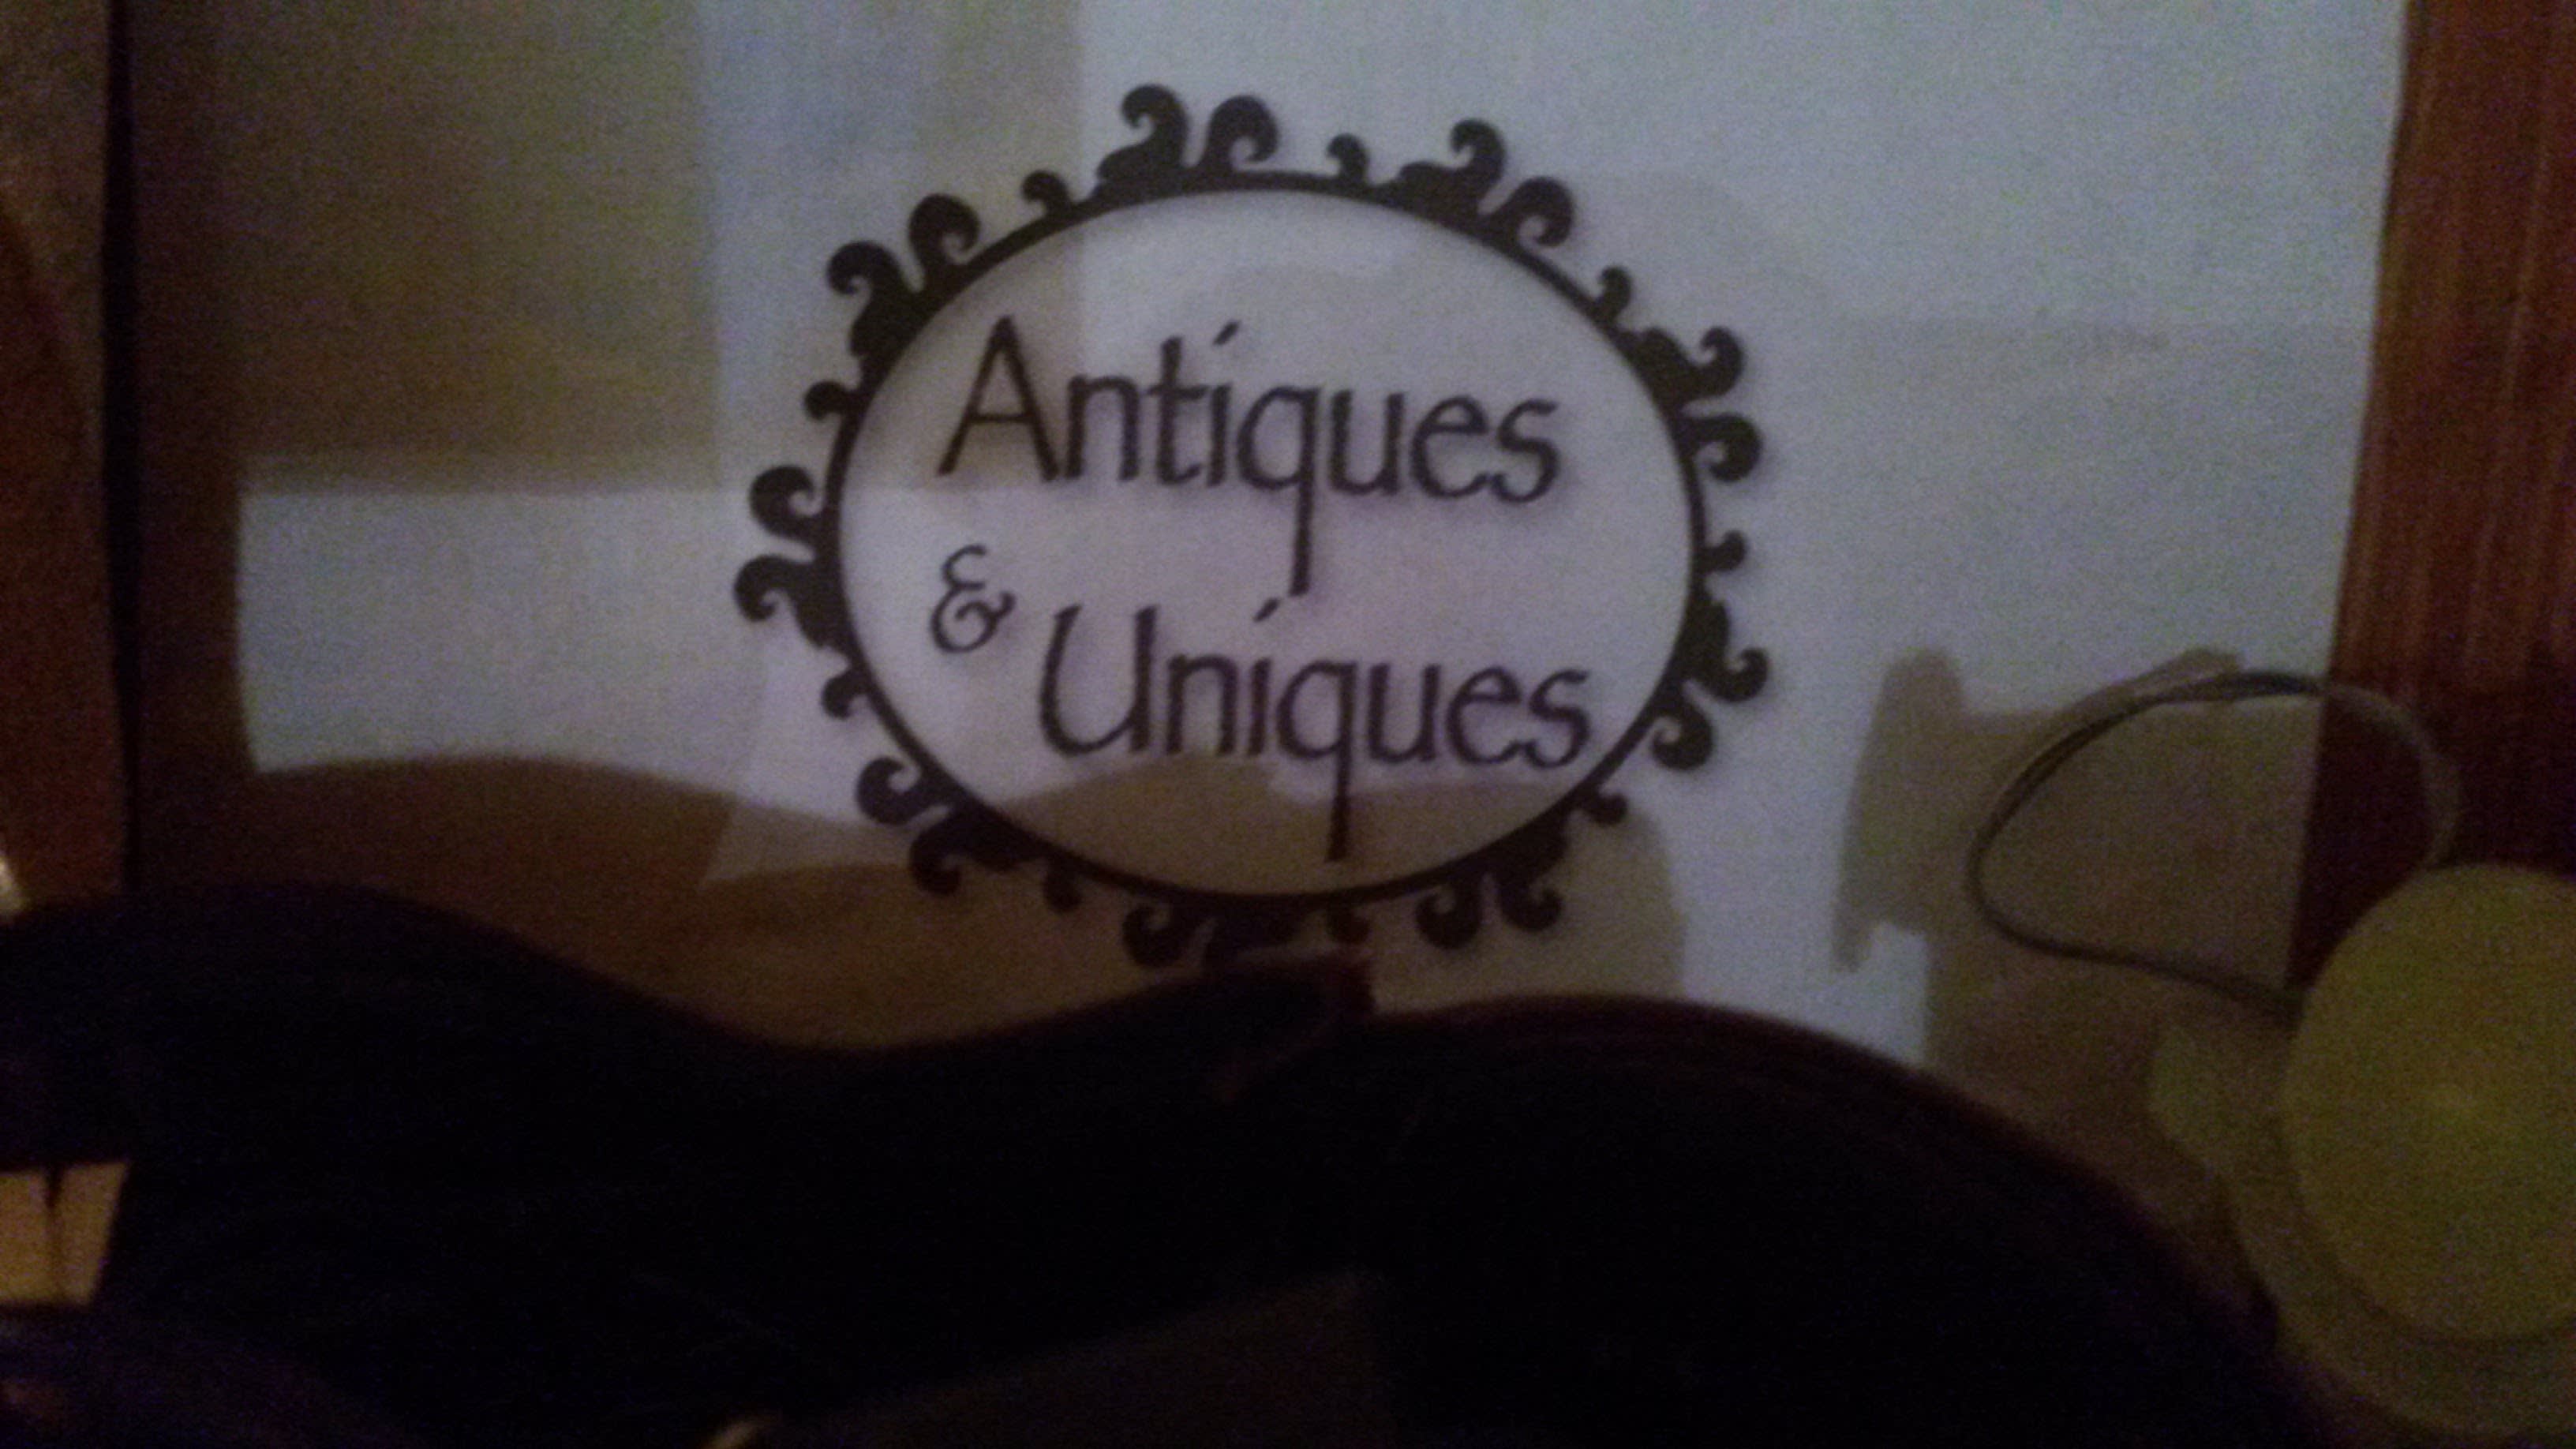 Antiques & Uniques